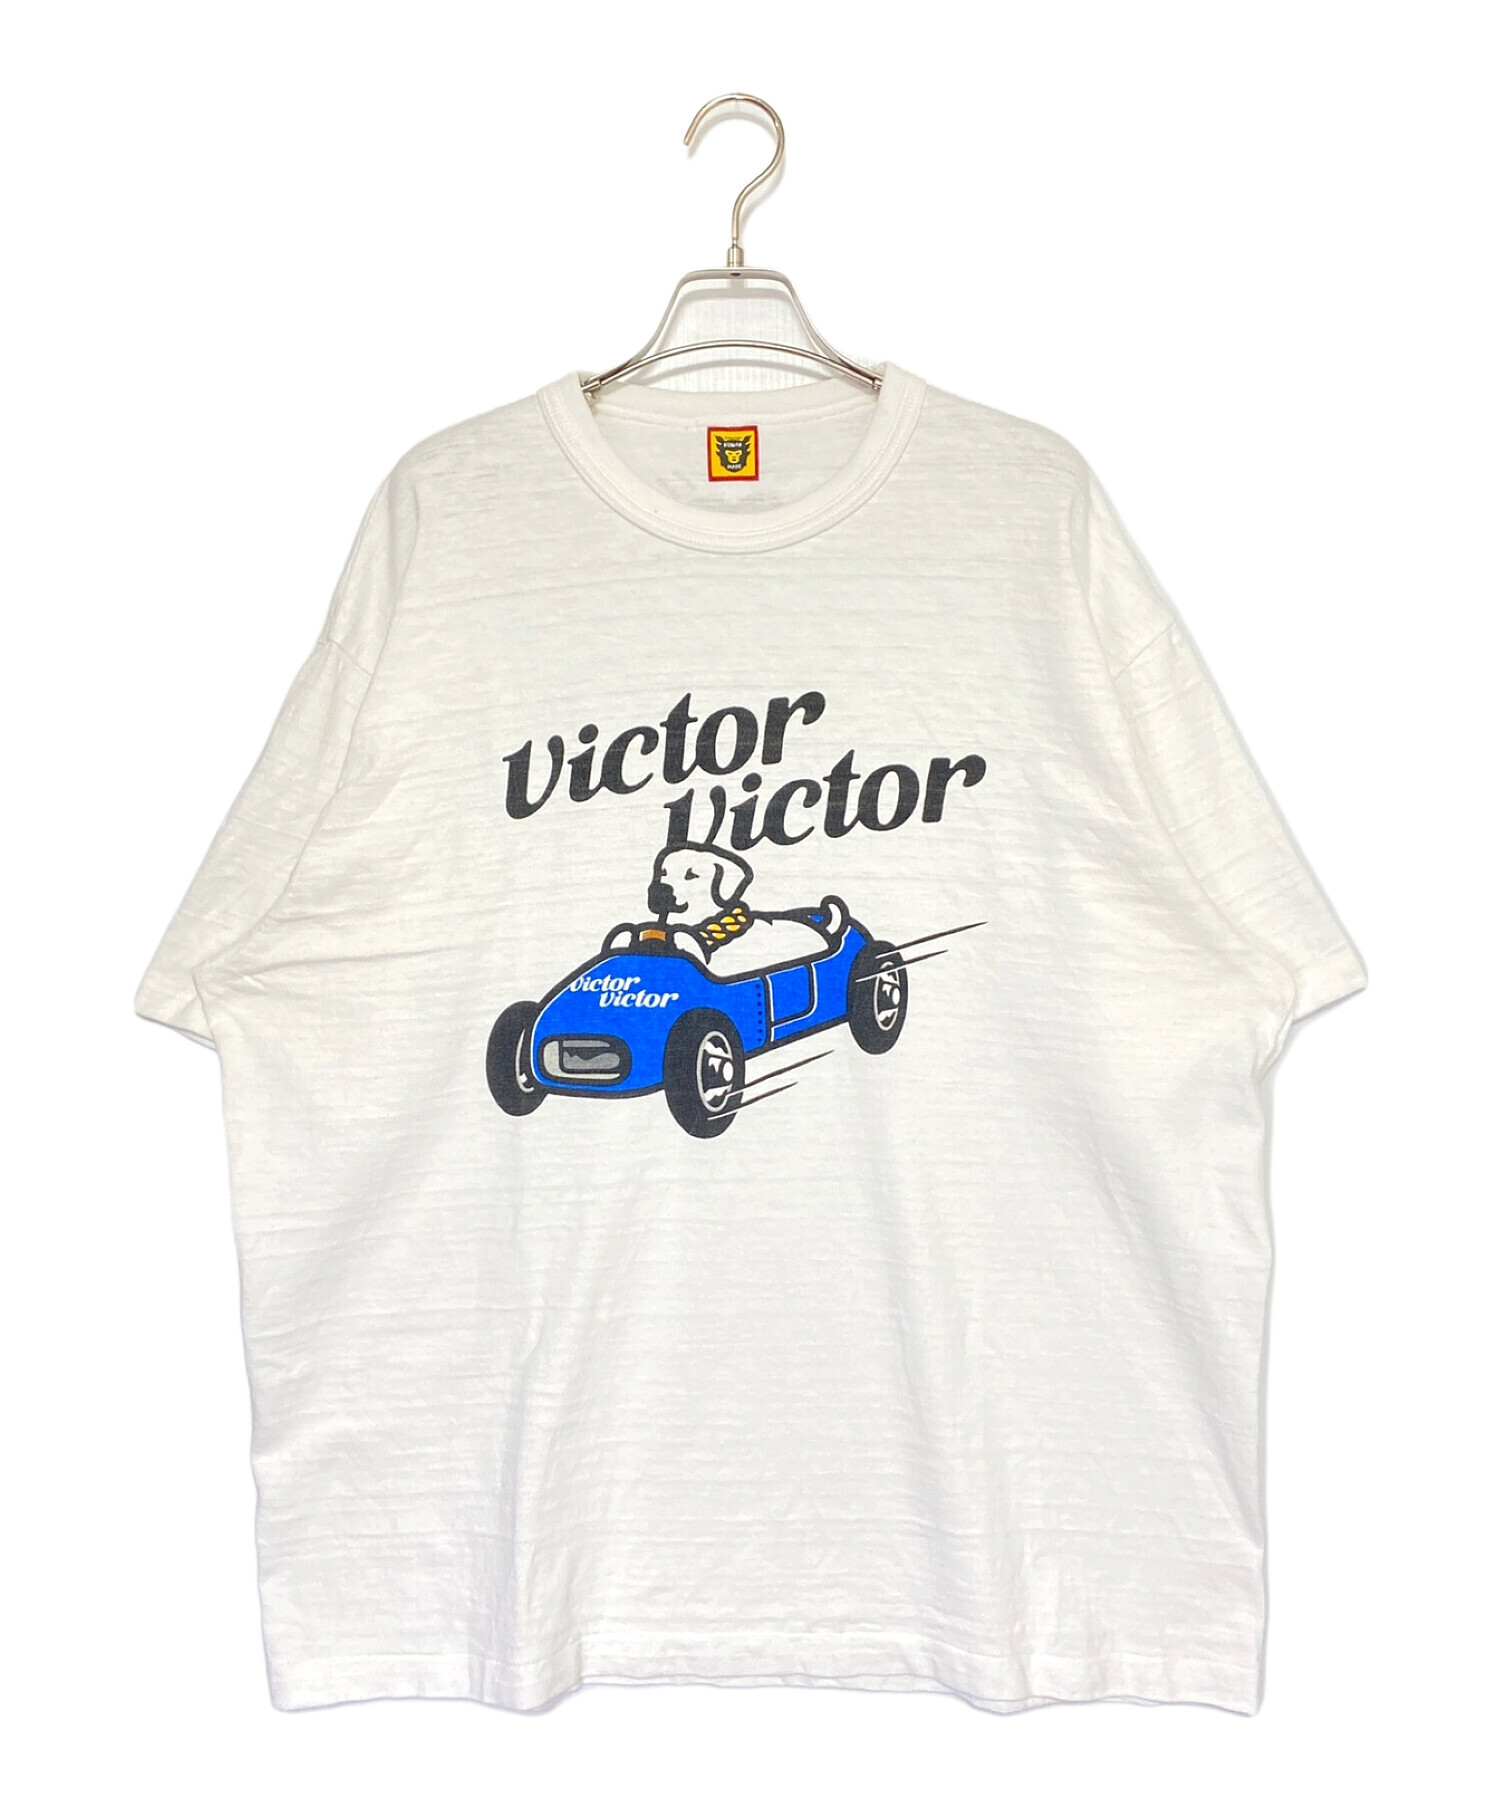 HUMAN MADE (ヒューマンメイド) Victor Victor Worldwide (ヴィクター ヴィクター ワールドワイド) VICTOR  VICTOR T-SHIRT ホワイト サイズ:3XL